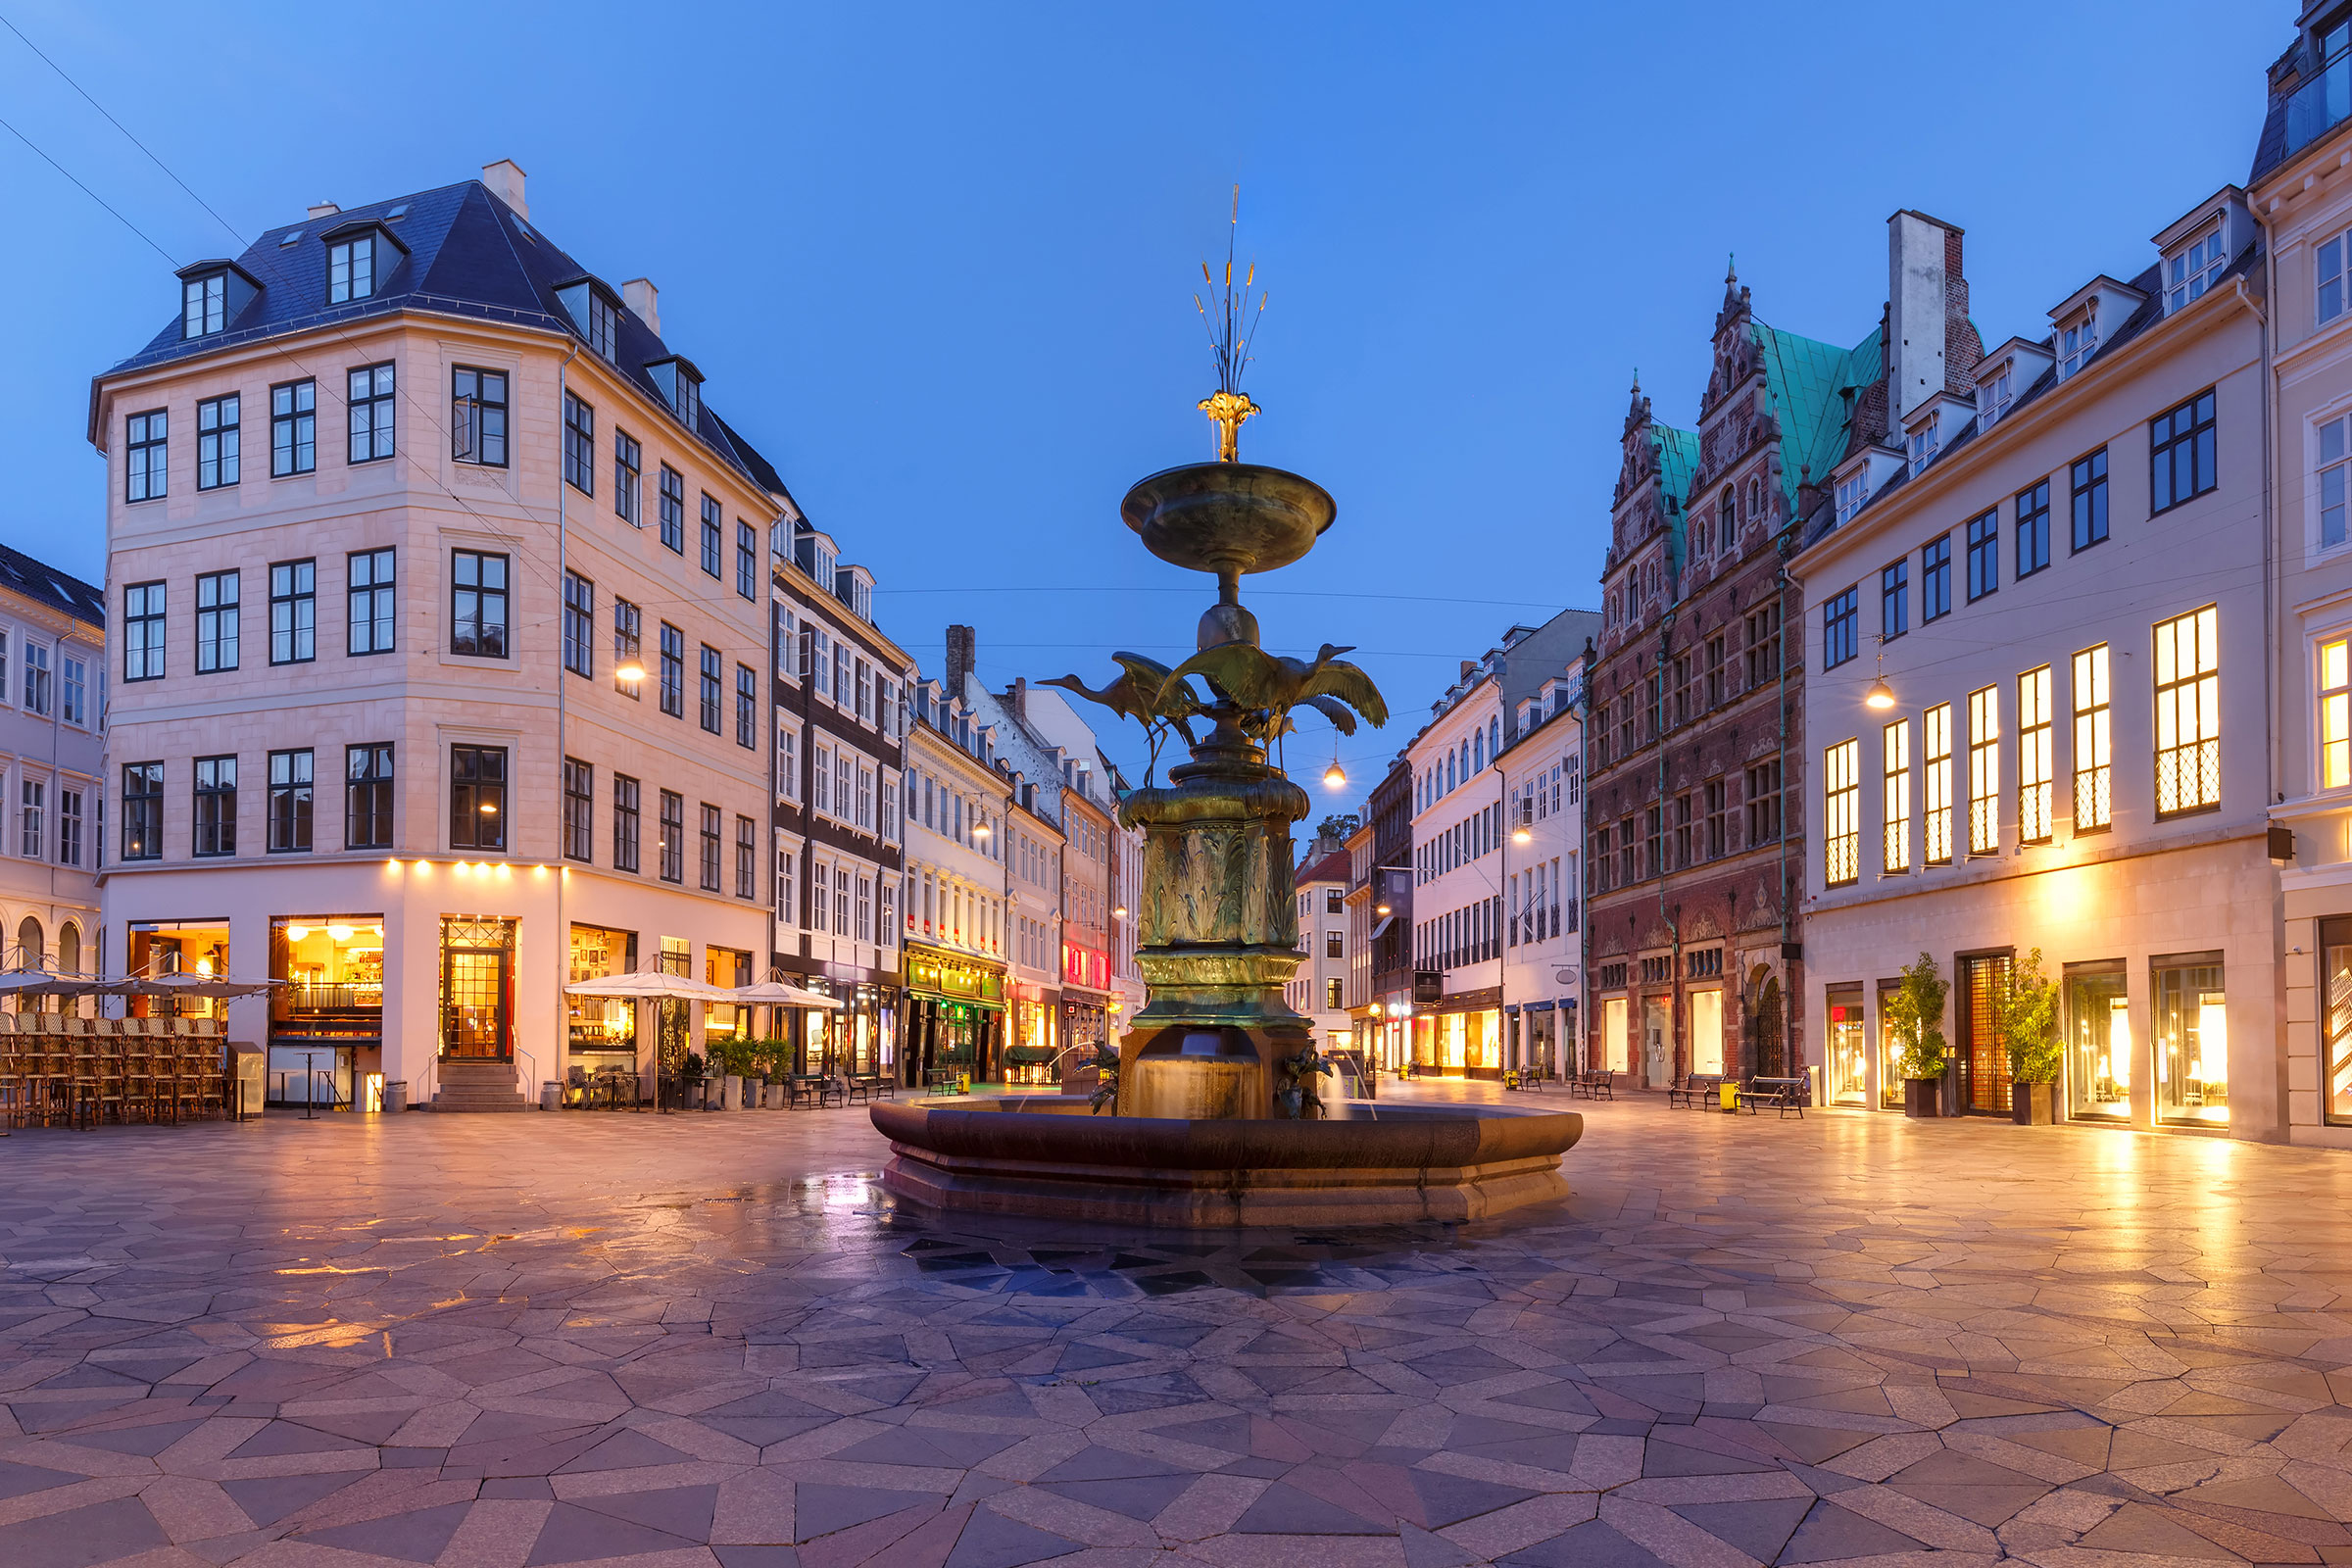 Stork Fountain on the Amagertorv square, Stroget street during morning blue hour, Copenhagen, capital of Denmark